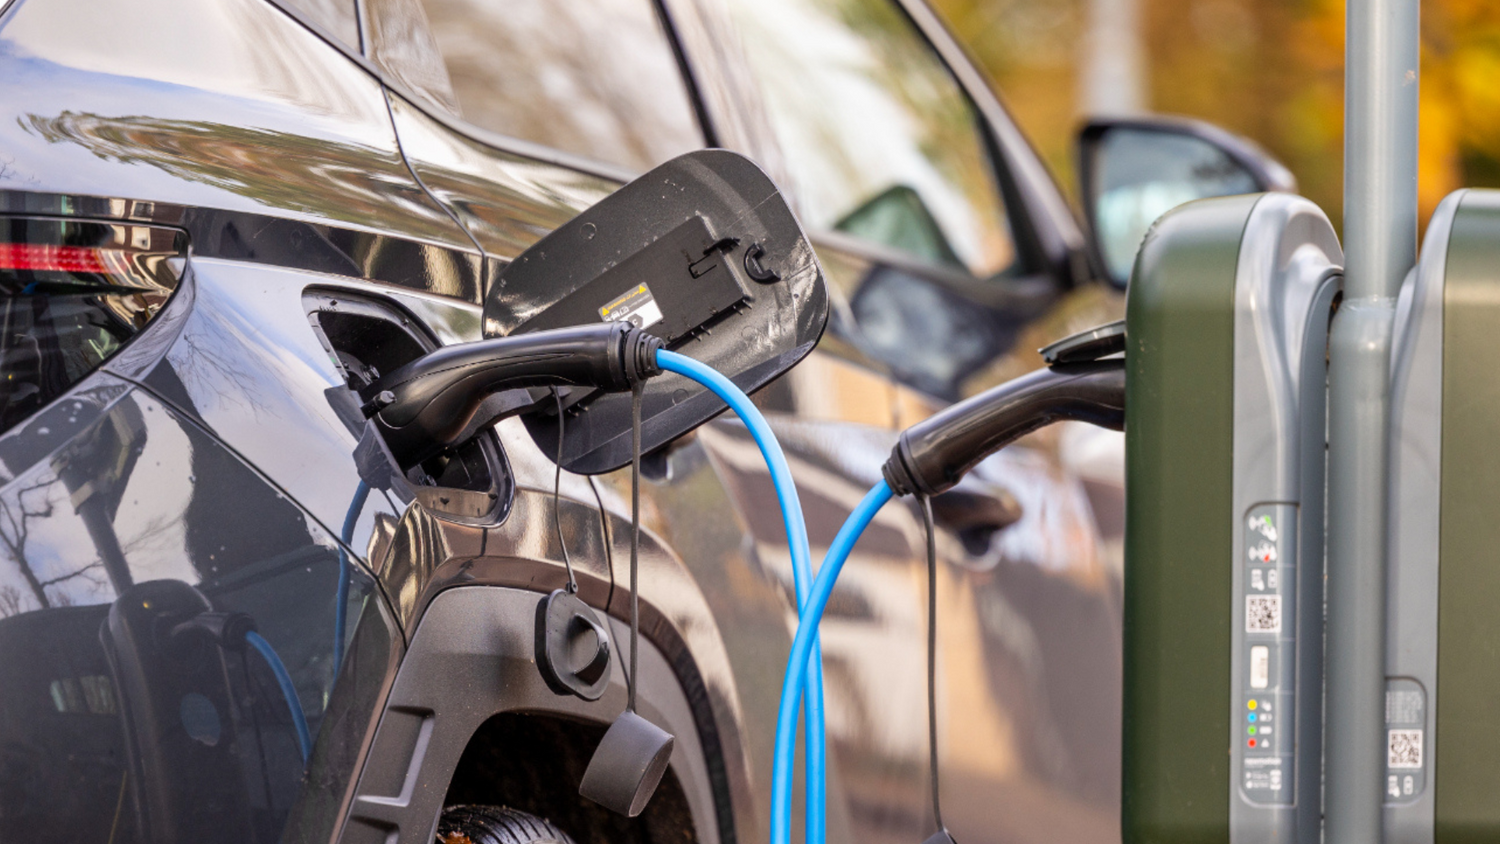 Voldt: câbles de charge et accessoires pour véhicules électriques